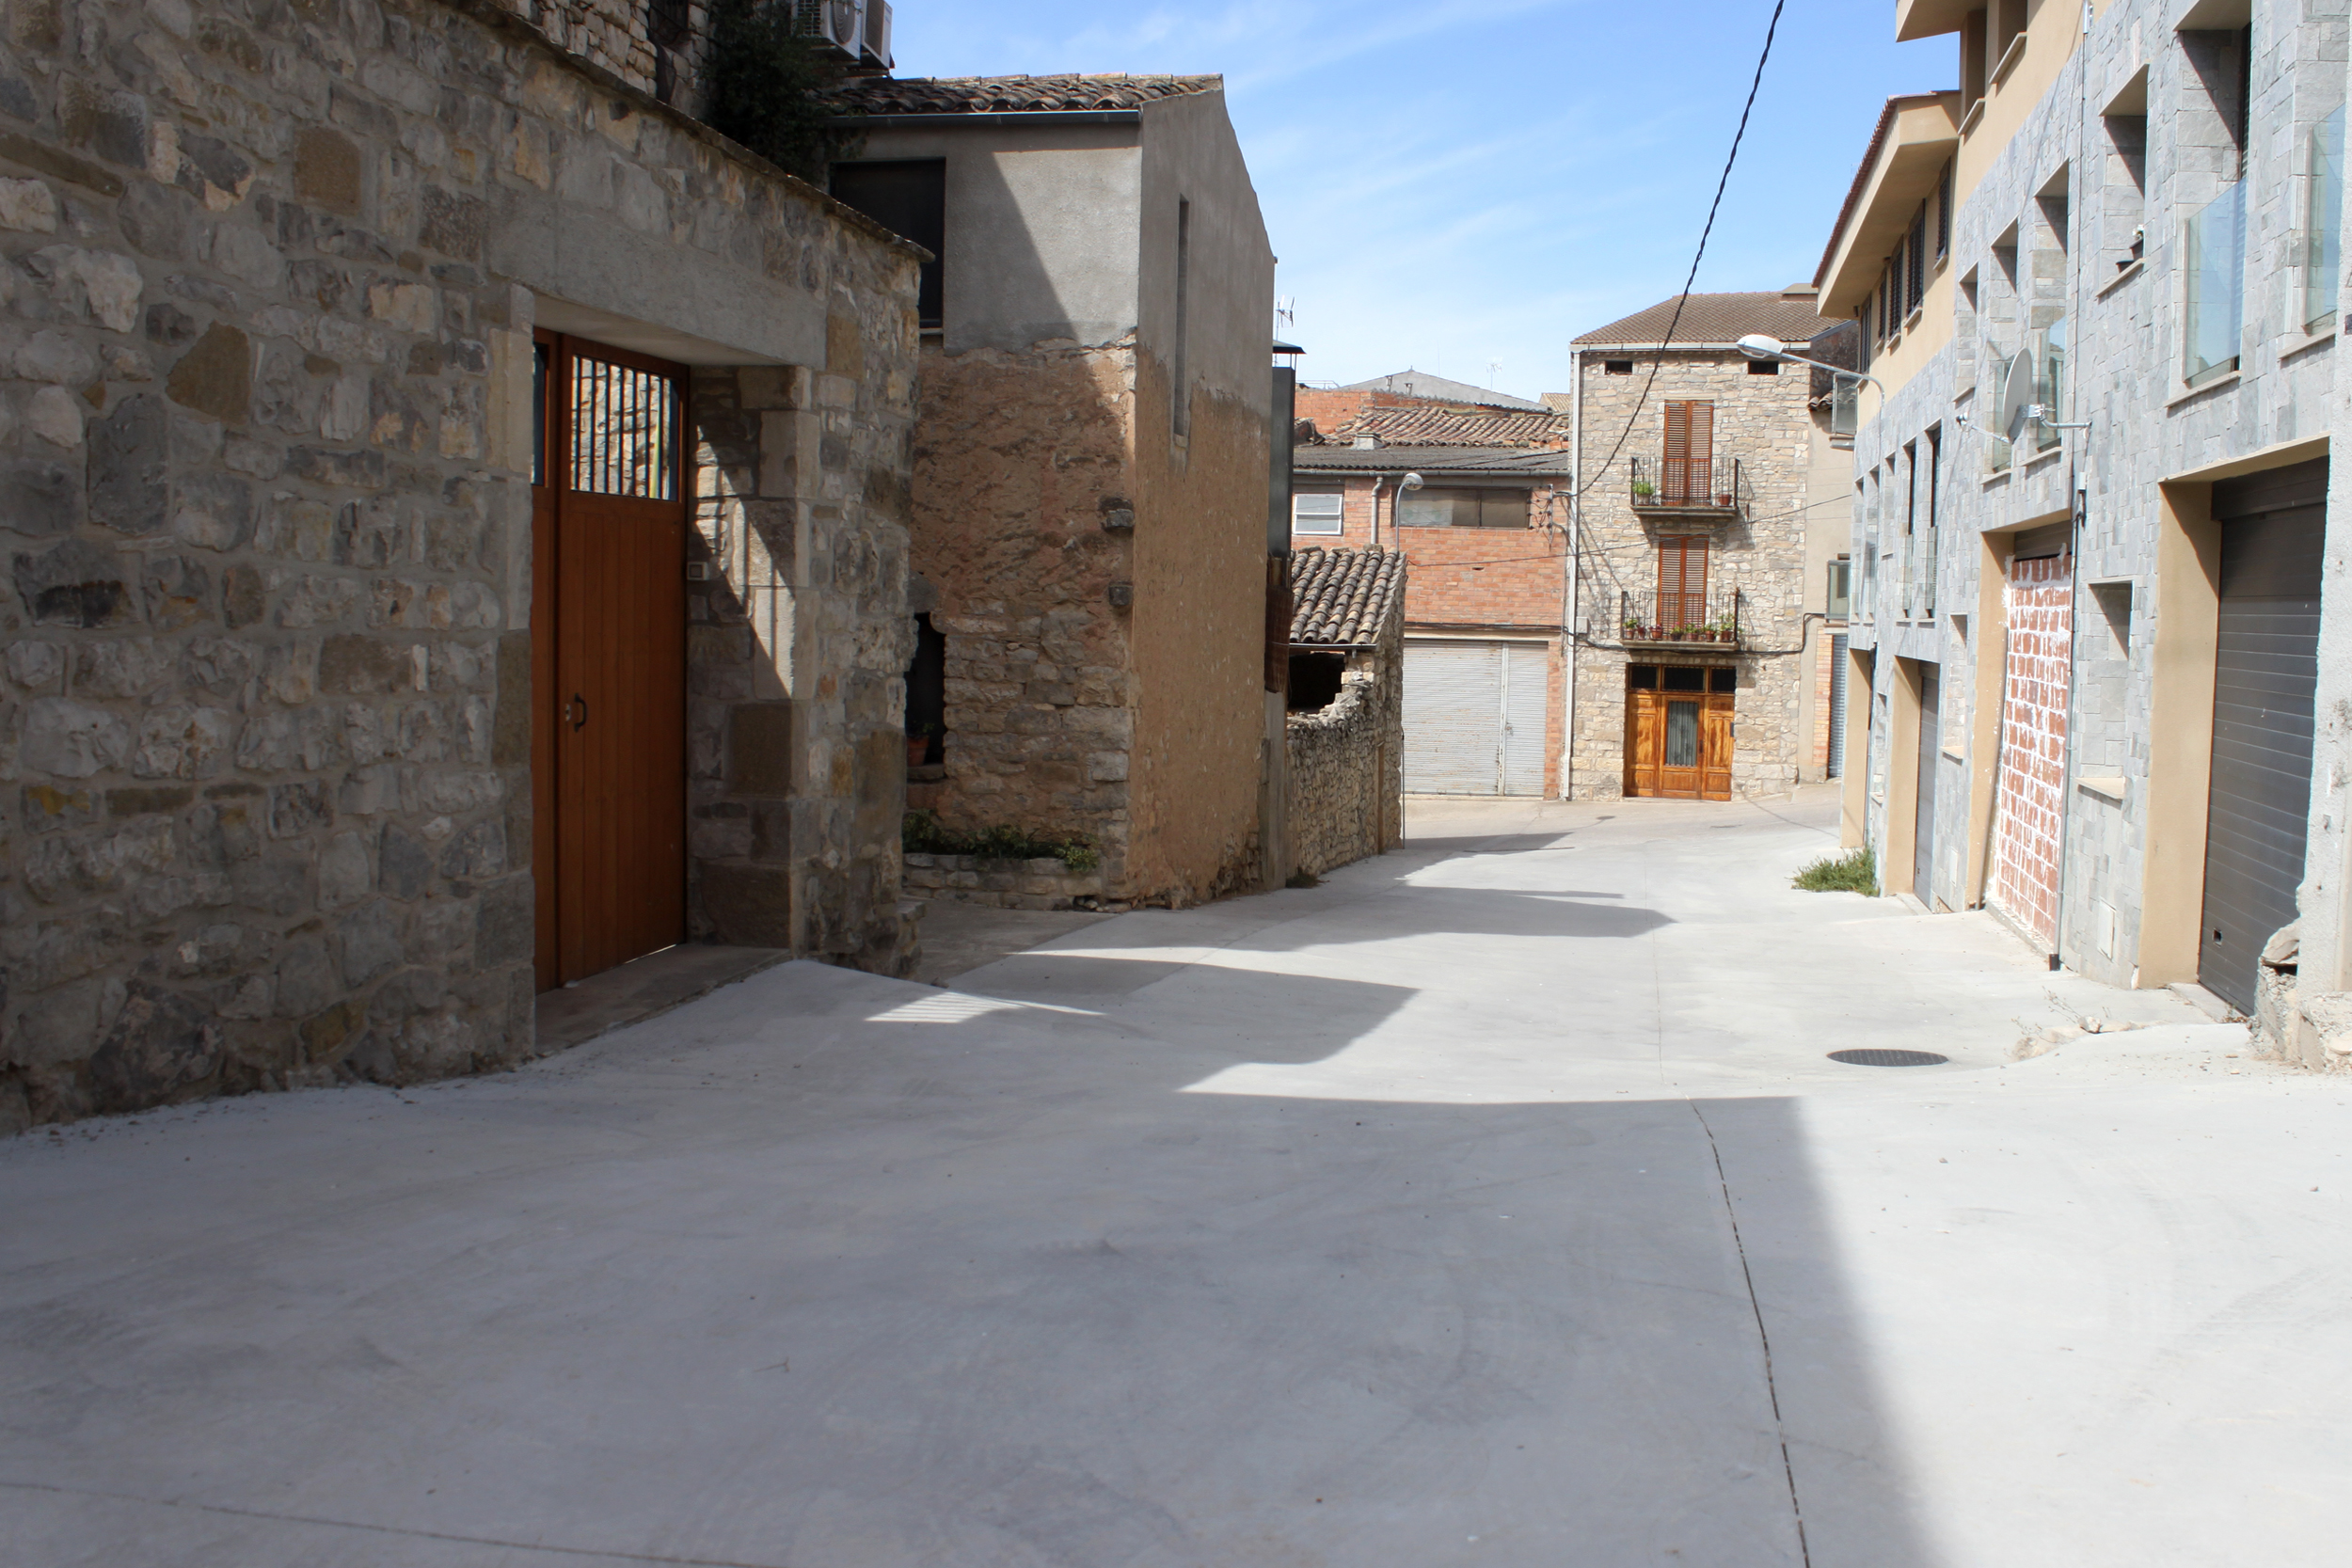 L’Ajuntament de Tàrrega enllesteix millores urbanístiques en tres carrers del poble d’Altet